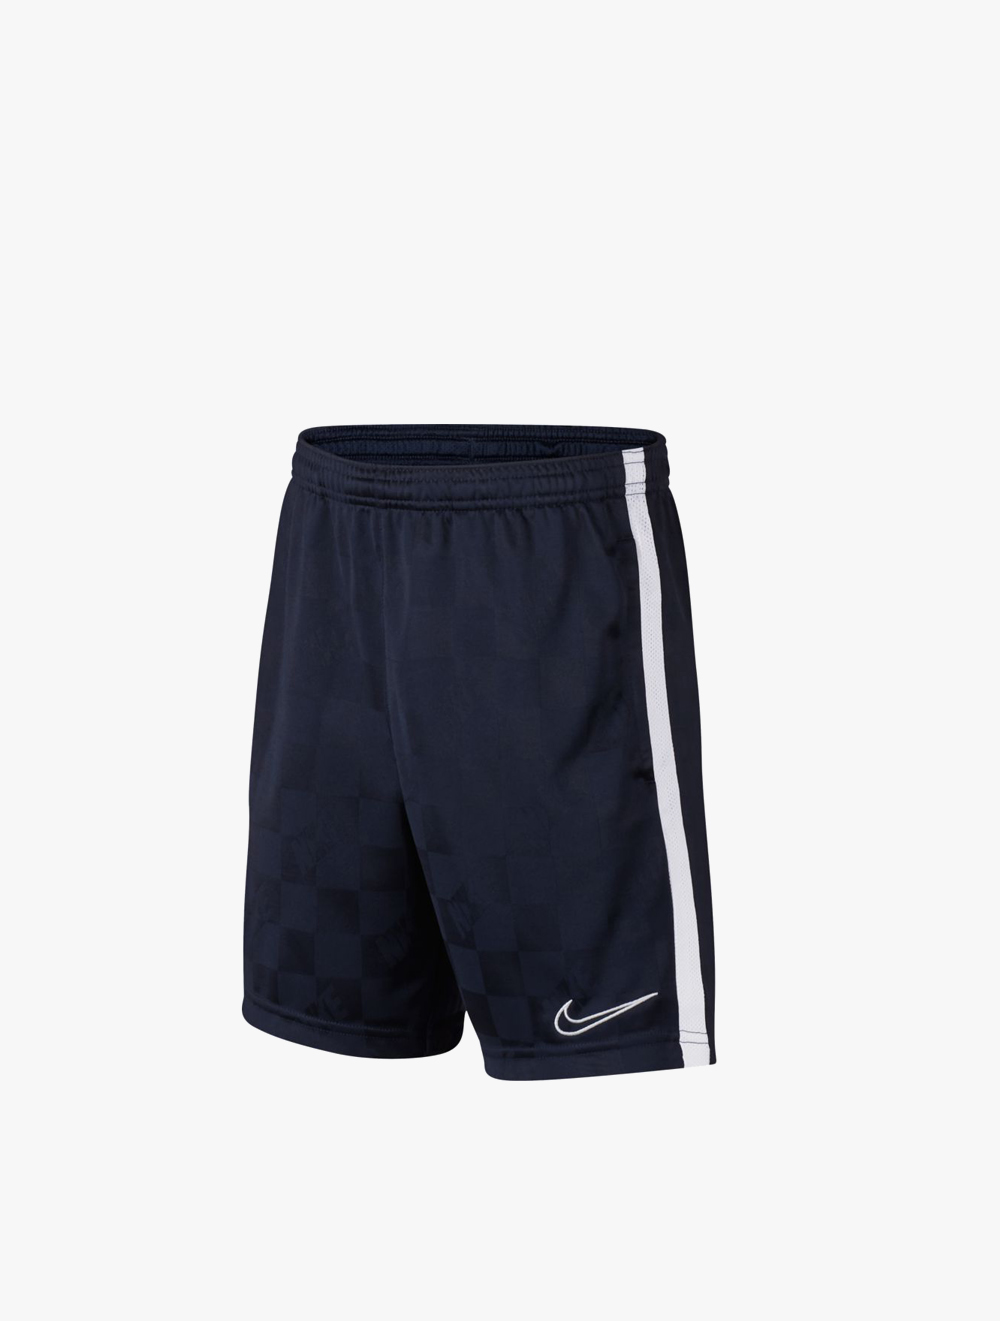 nike boys soccer shorts